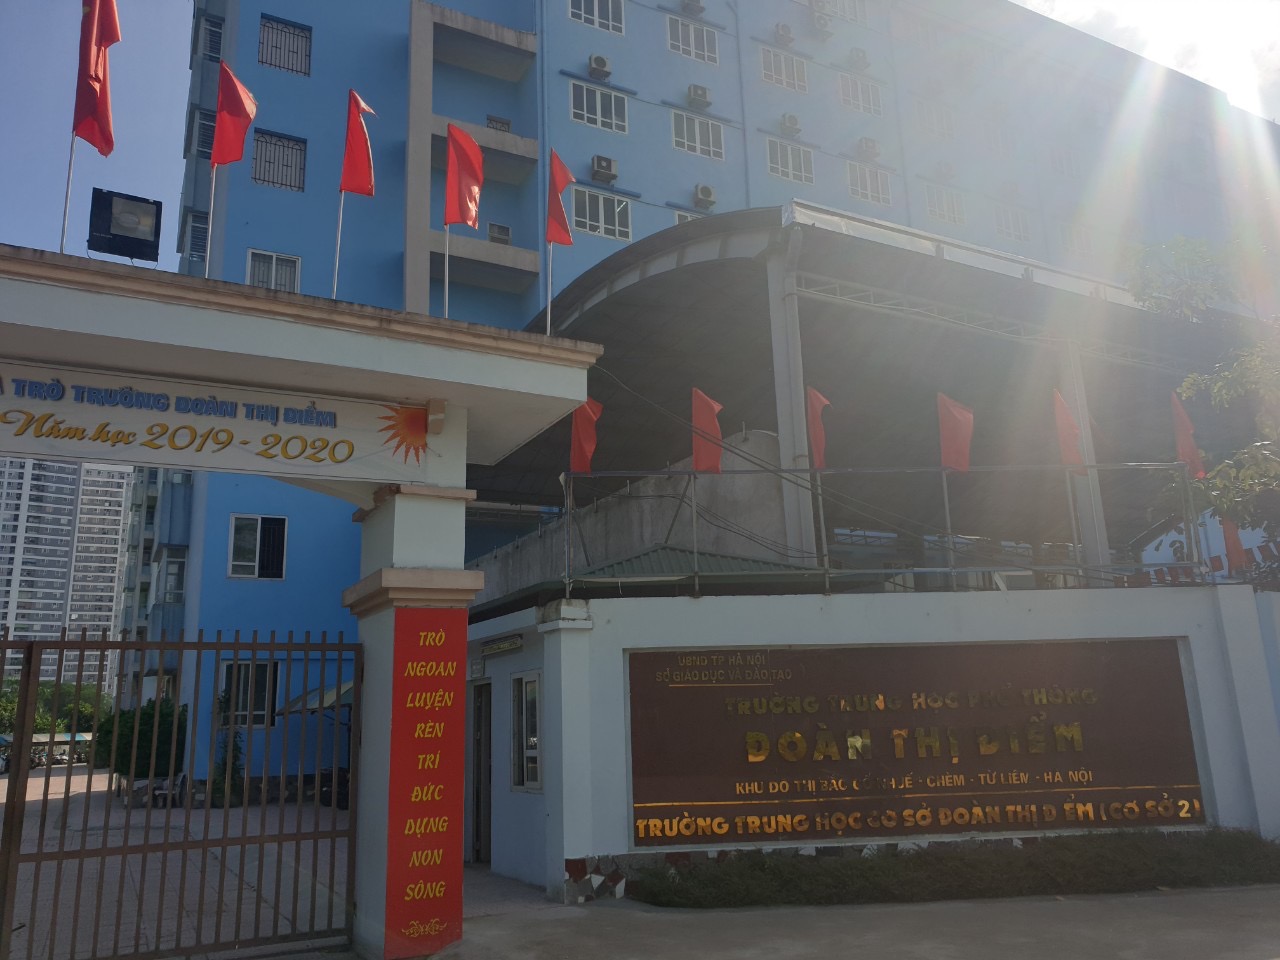 Hà Nội: Hé lộ nhiều sai phạm tại trường Đoàn Thị Điểm cơ sở 2